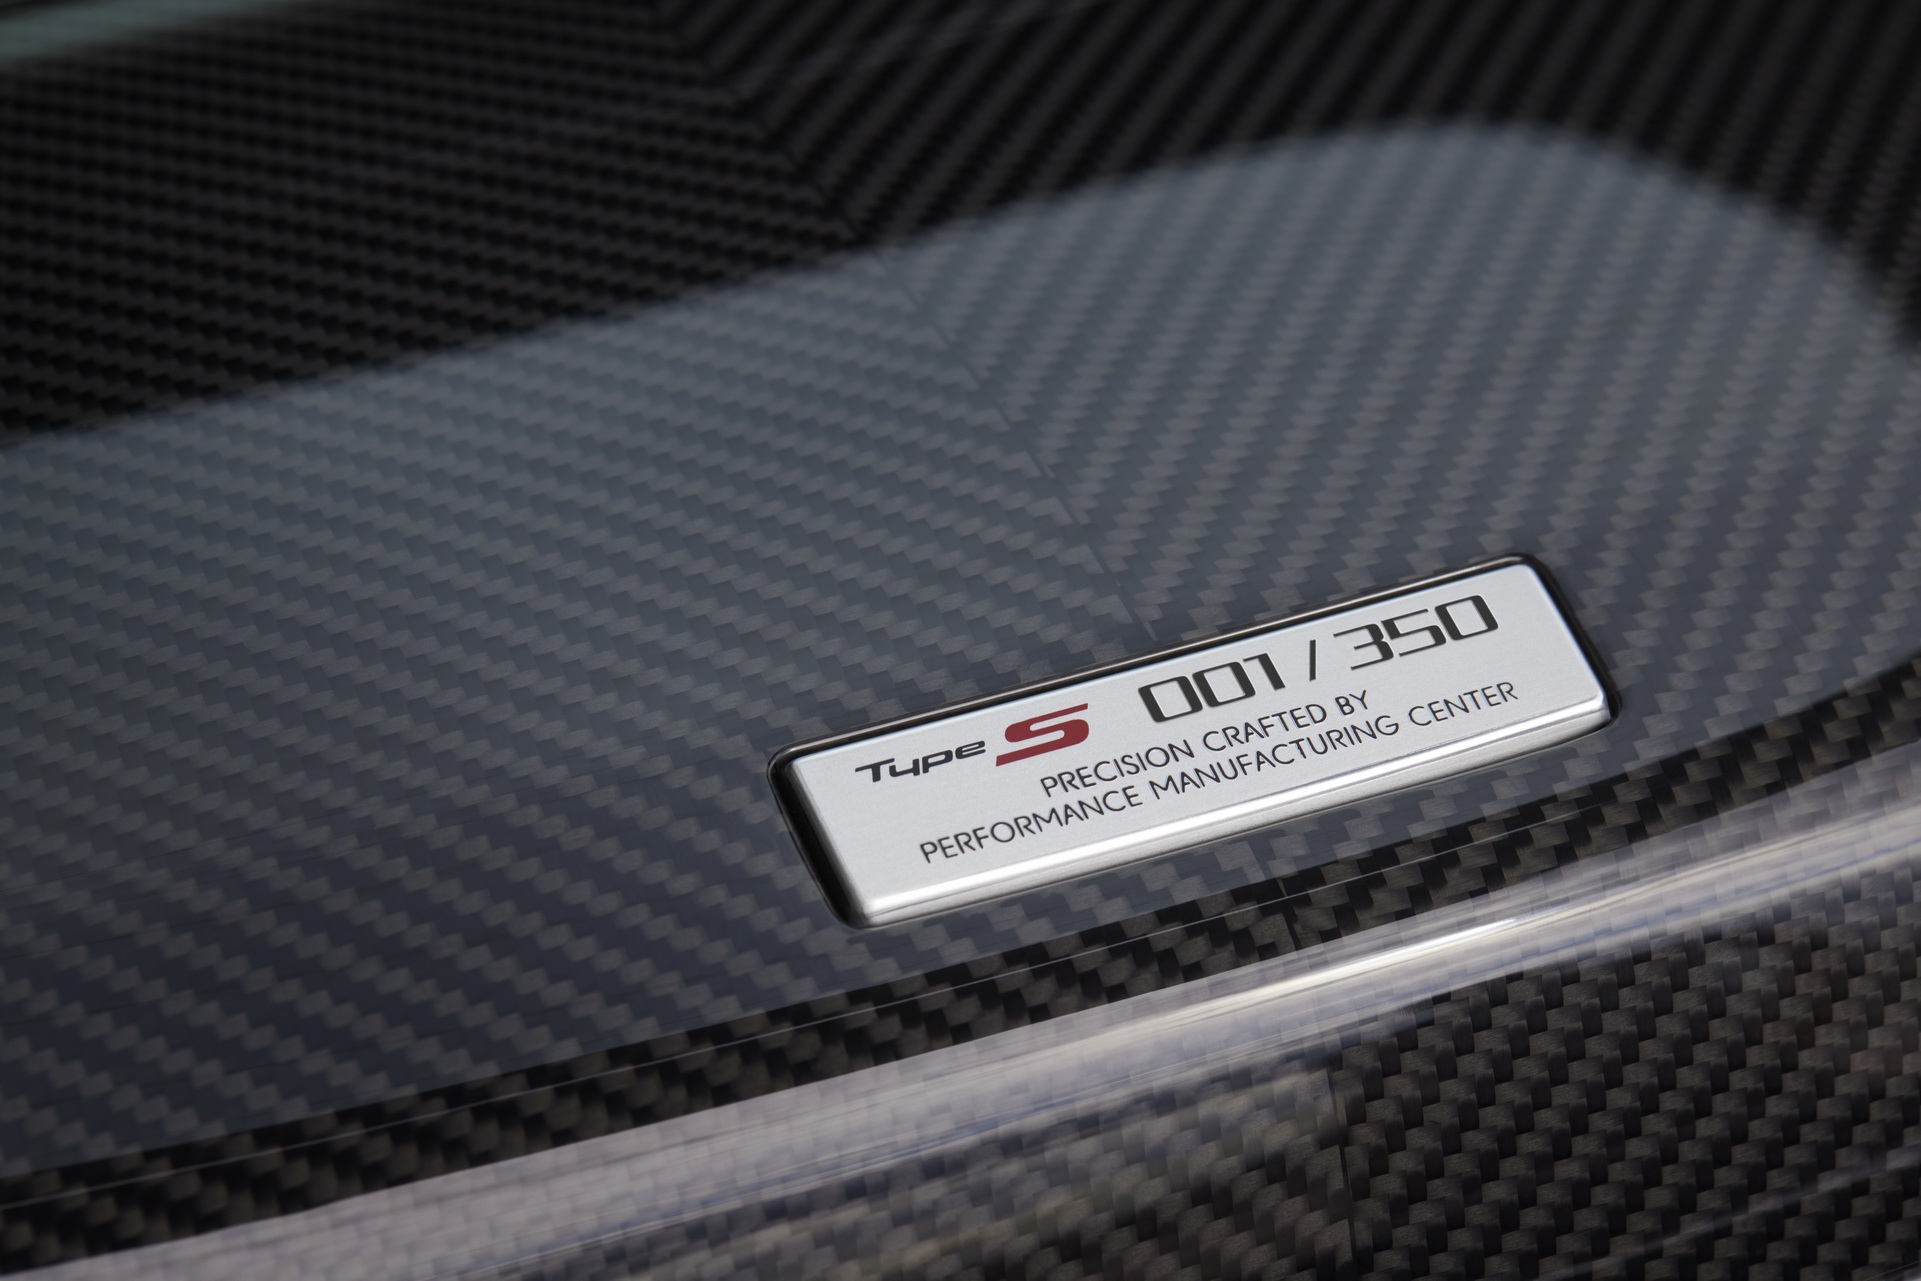 限量生产350台 讴歌NSX Type S正式发布